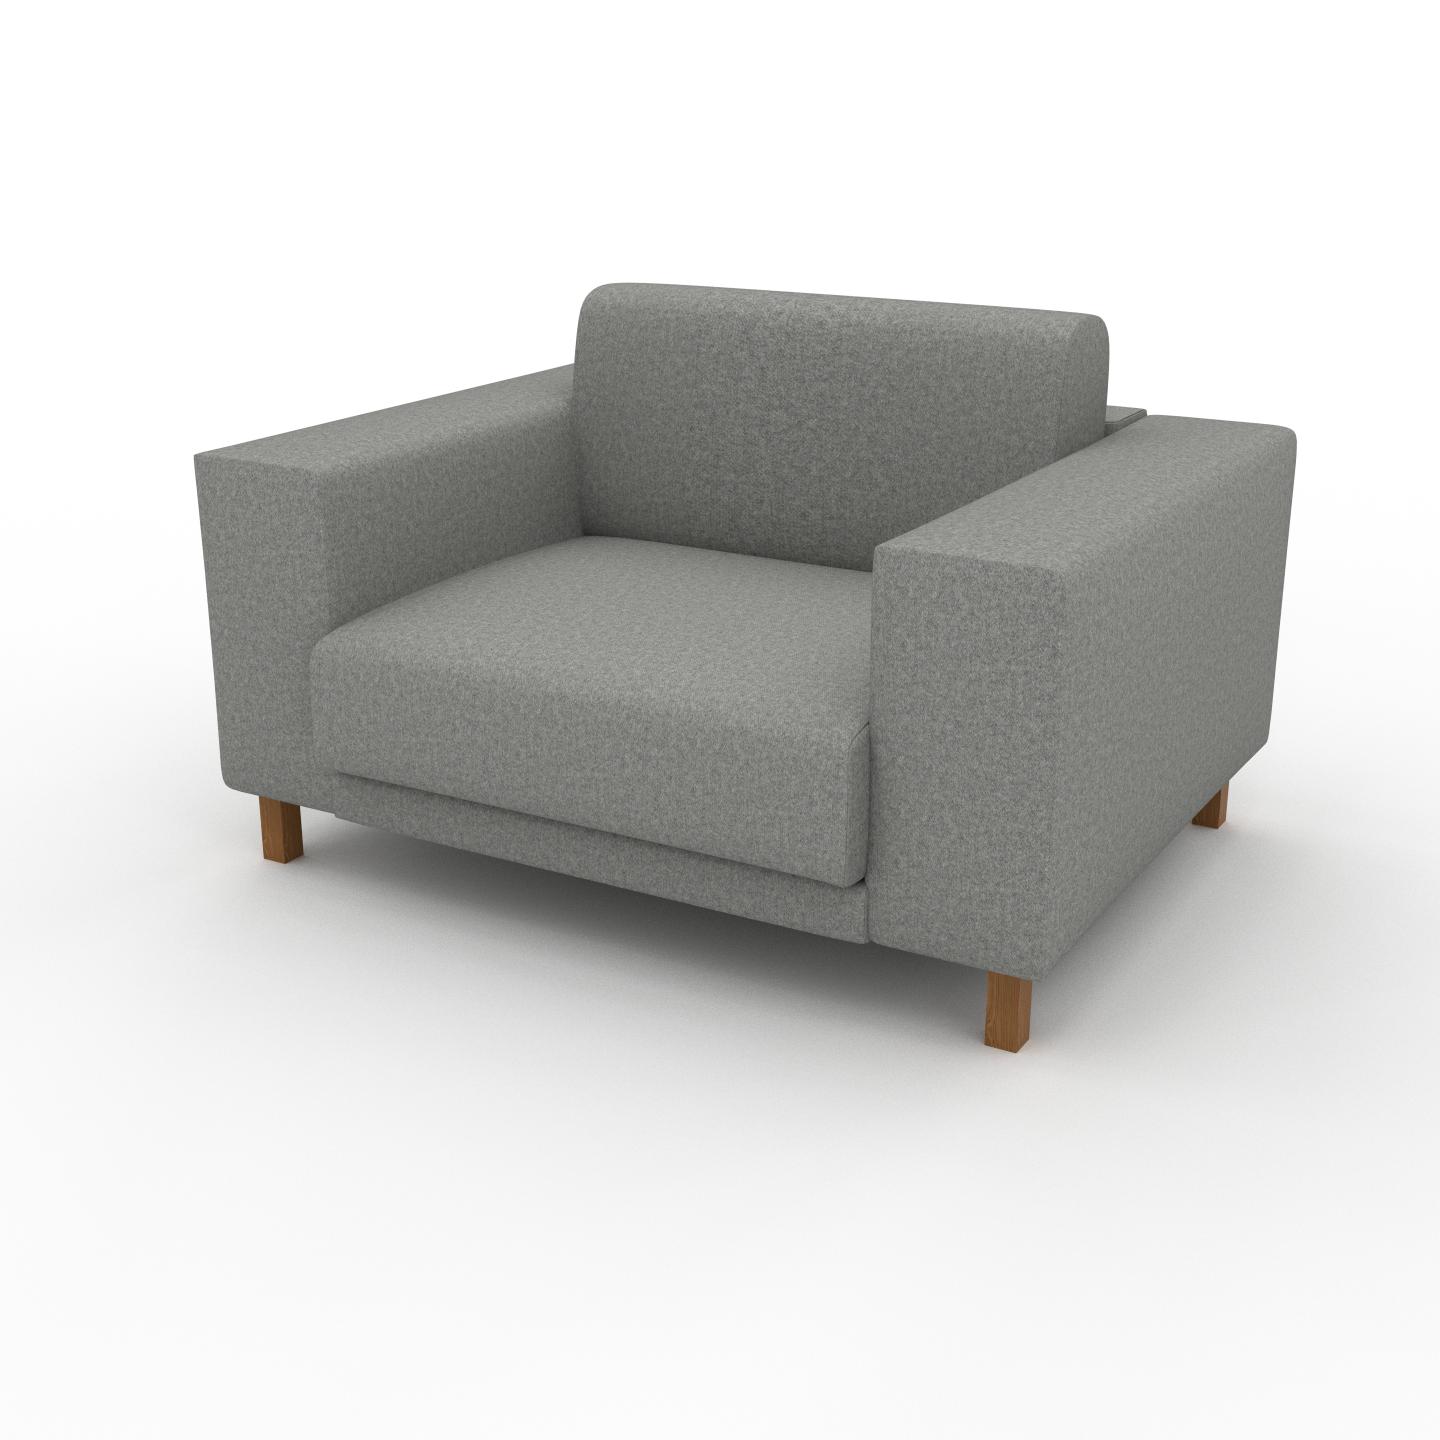 MYCS Sessel Lichtgrau - Eleganter Sessel: Hochwertige Qualität, einzigartiges Design - 128 x 75 x 98 cm, Individuell konfigurierbar